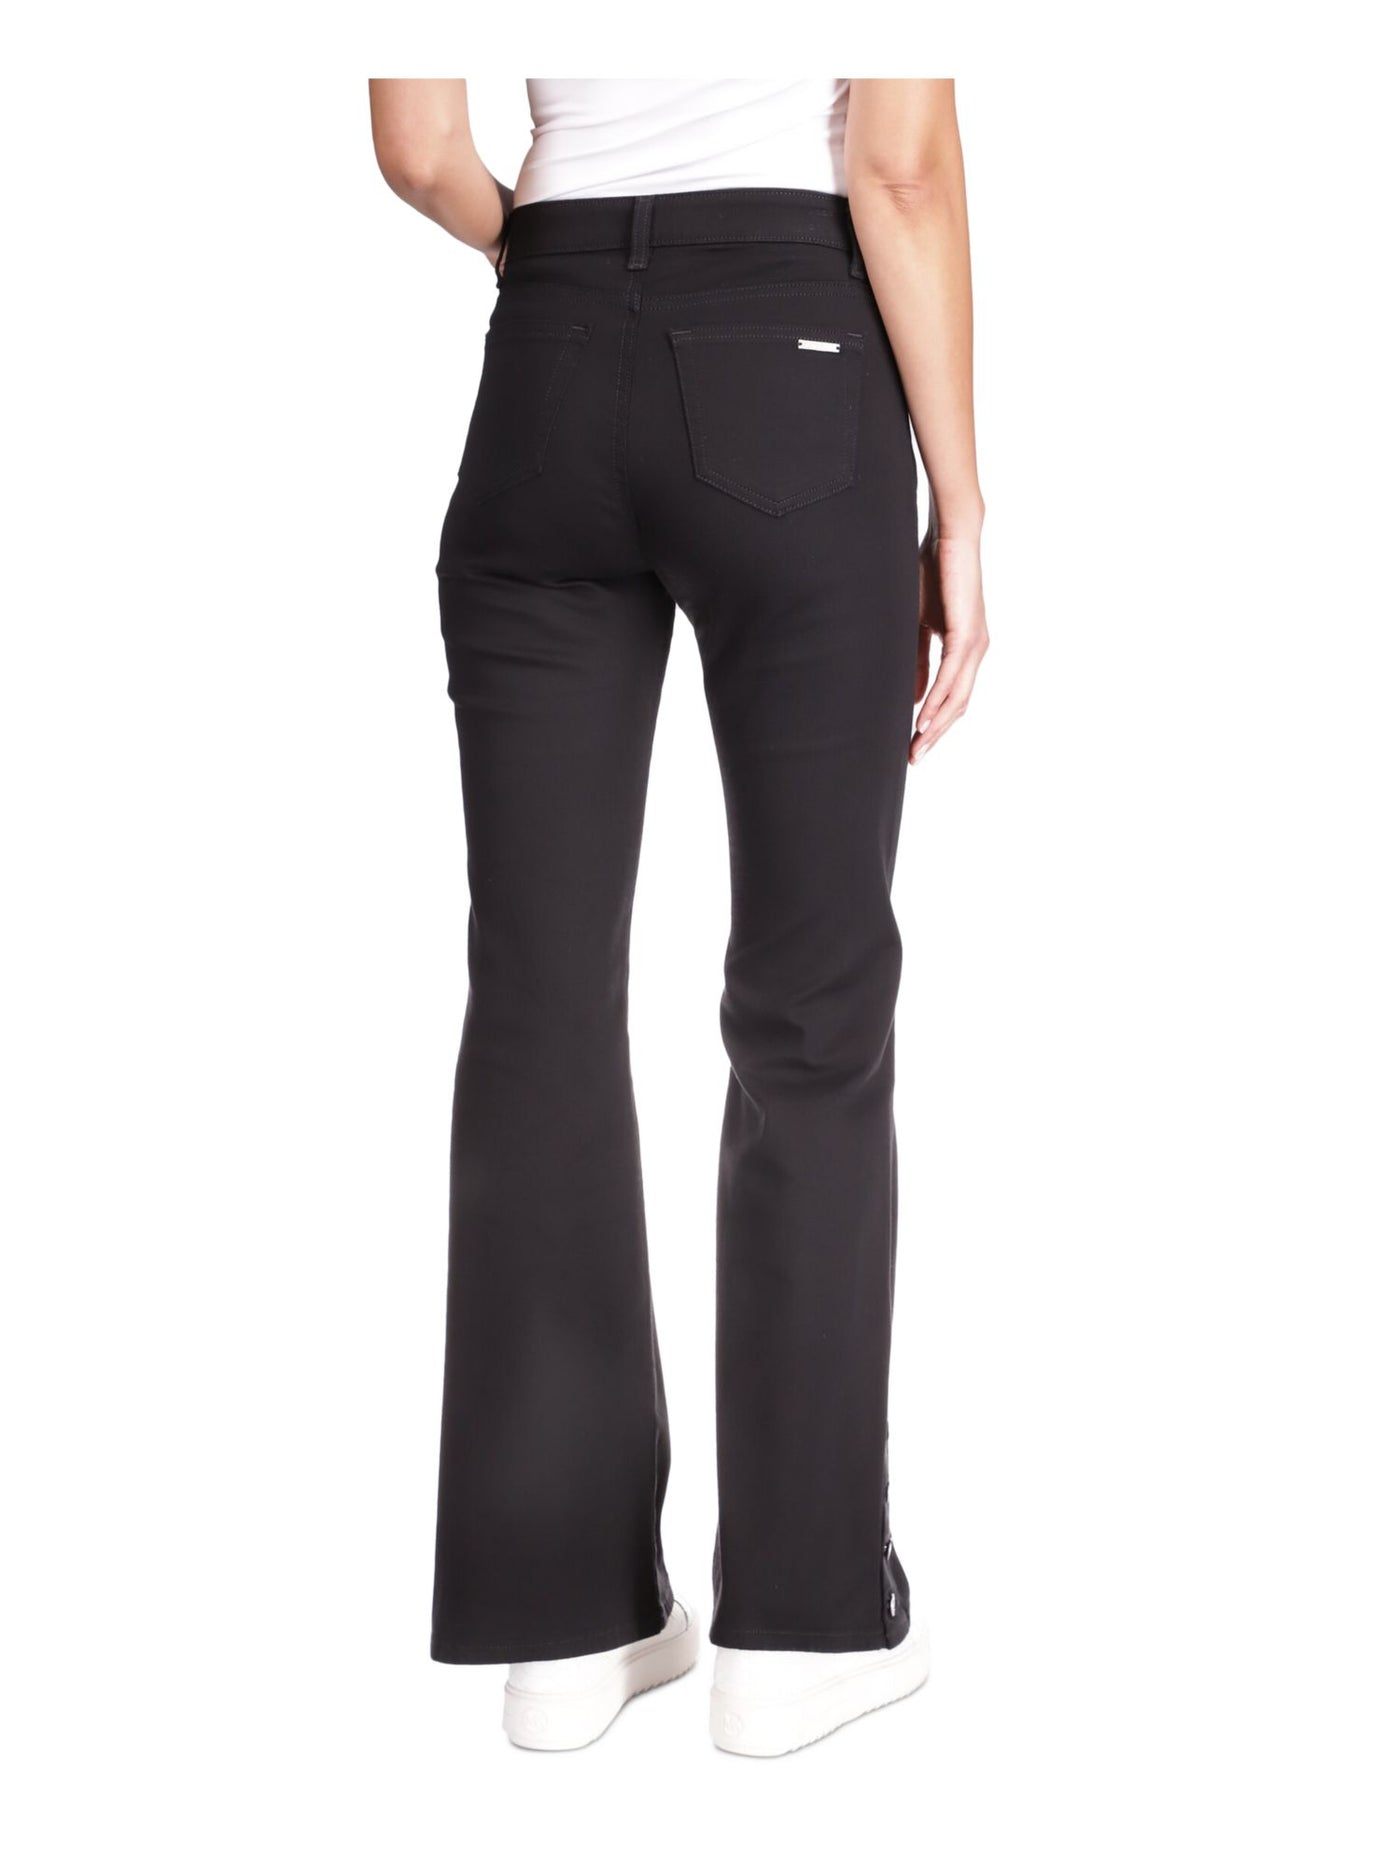 MICHAEL KORS Womens Navy Zippered Pocketed Button-hem Flare Leg High Waist Jeans Petites 14P